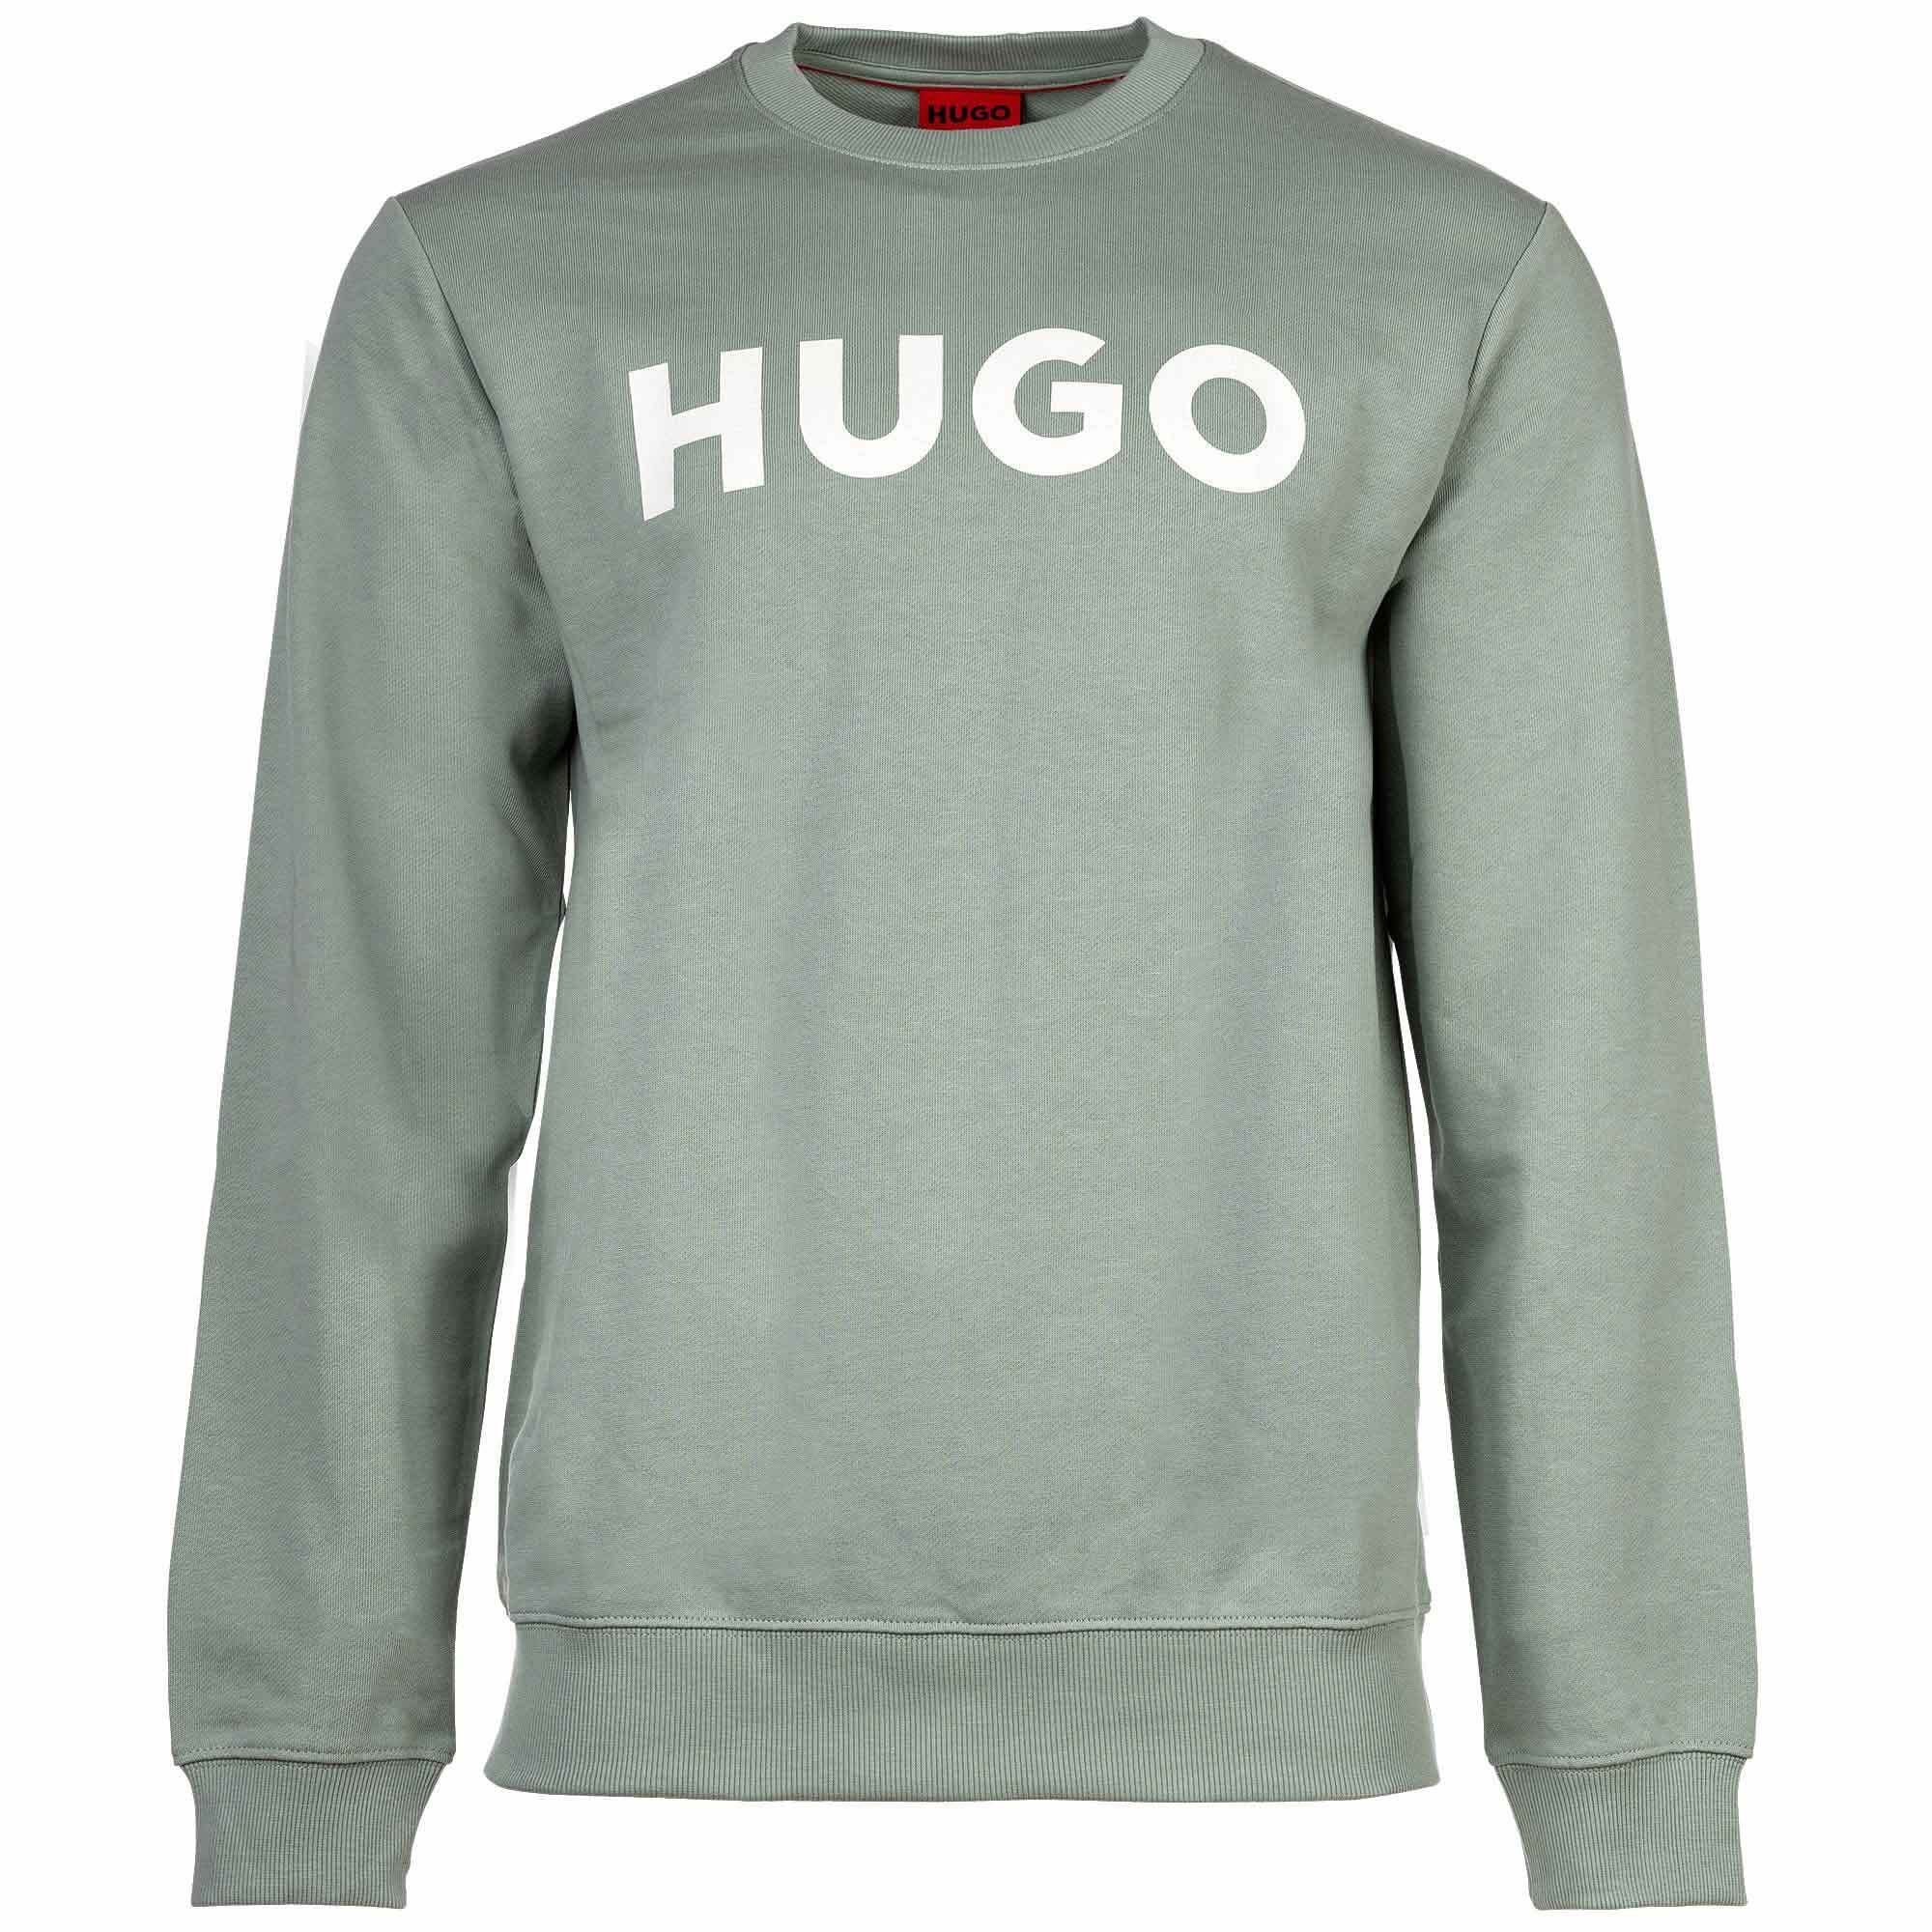 French Grün Sweatshirt, HUGO - Herren DEM, Rundhals, Sweater Sweatshirt